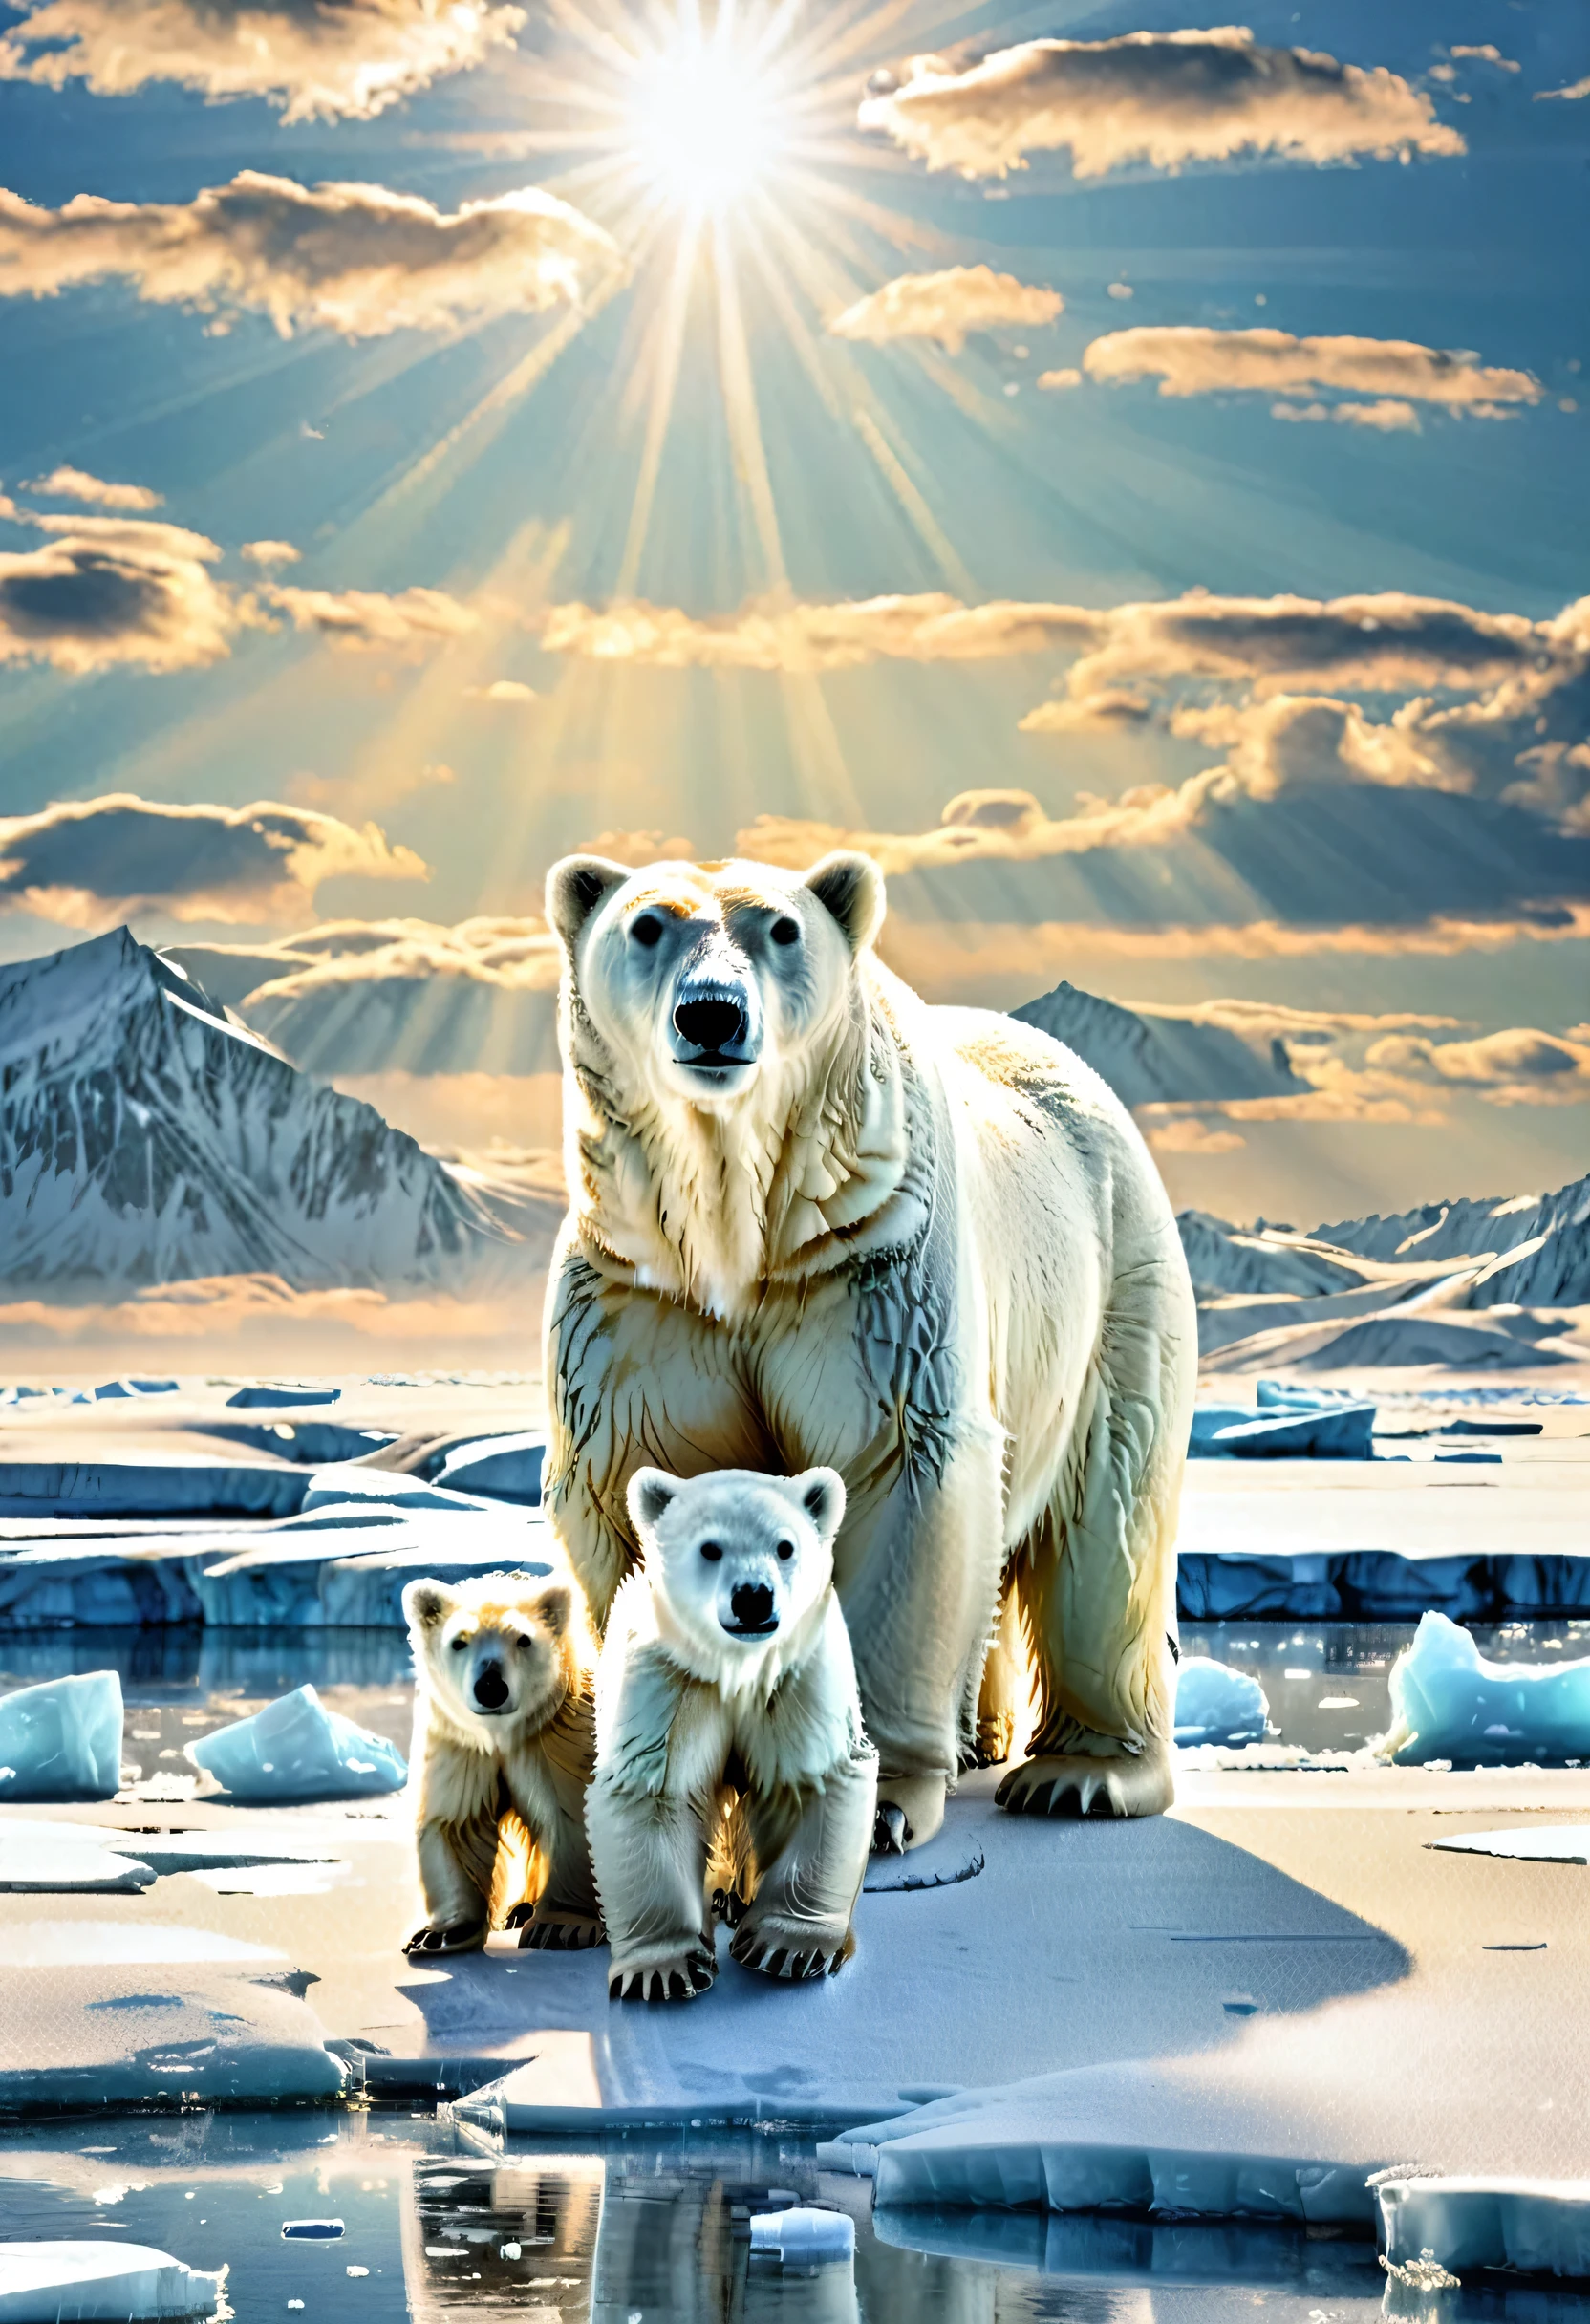 familia de osos polares、hielo Artico、Campo de nieve muy bonito、Refleja la luz del sol y brilla intensamente.、naturaleza、Siente la dureza de la naturaleza en medio de la belleza.、Obra maestra、Ultra Alta Definición、estilo watercoce、